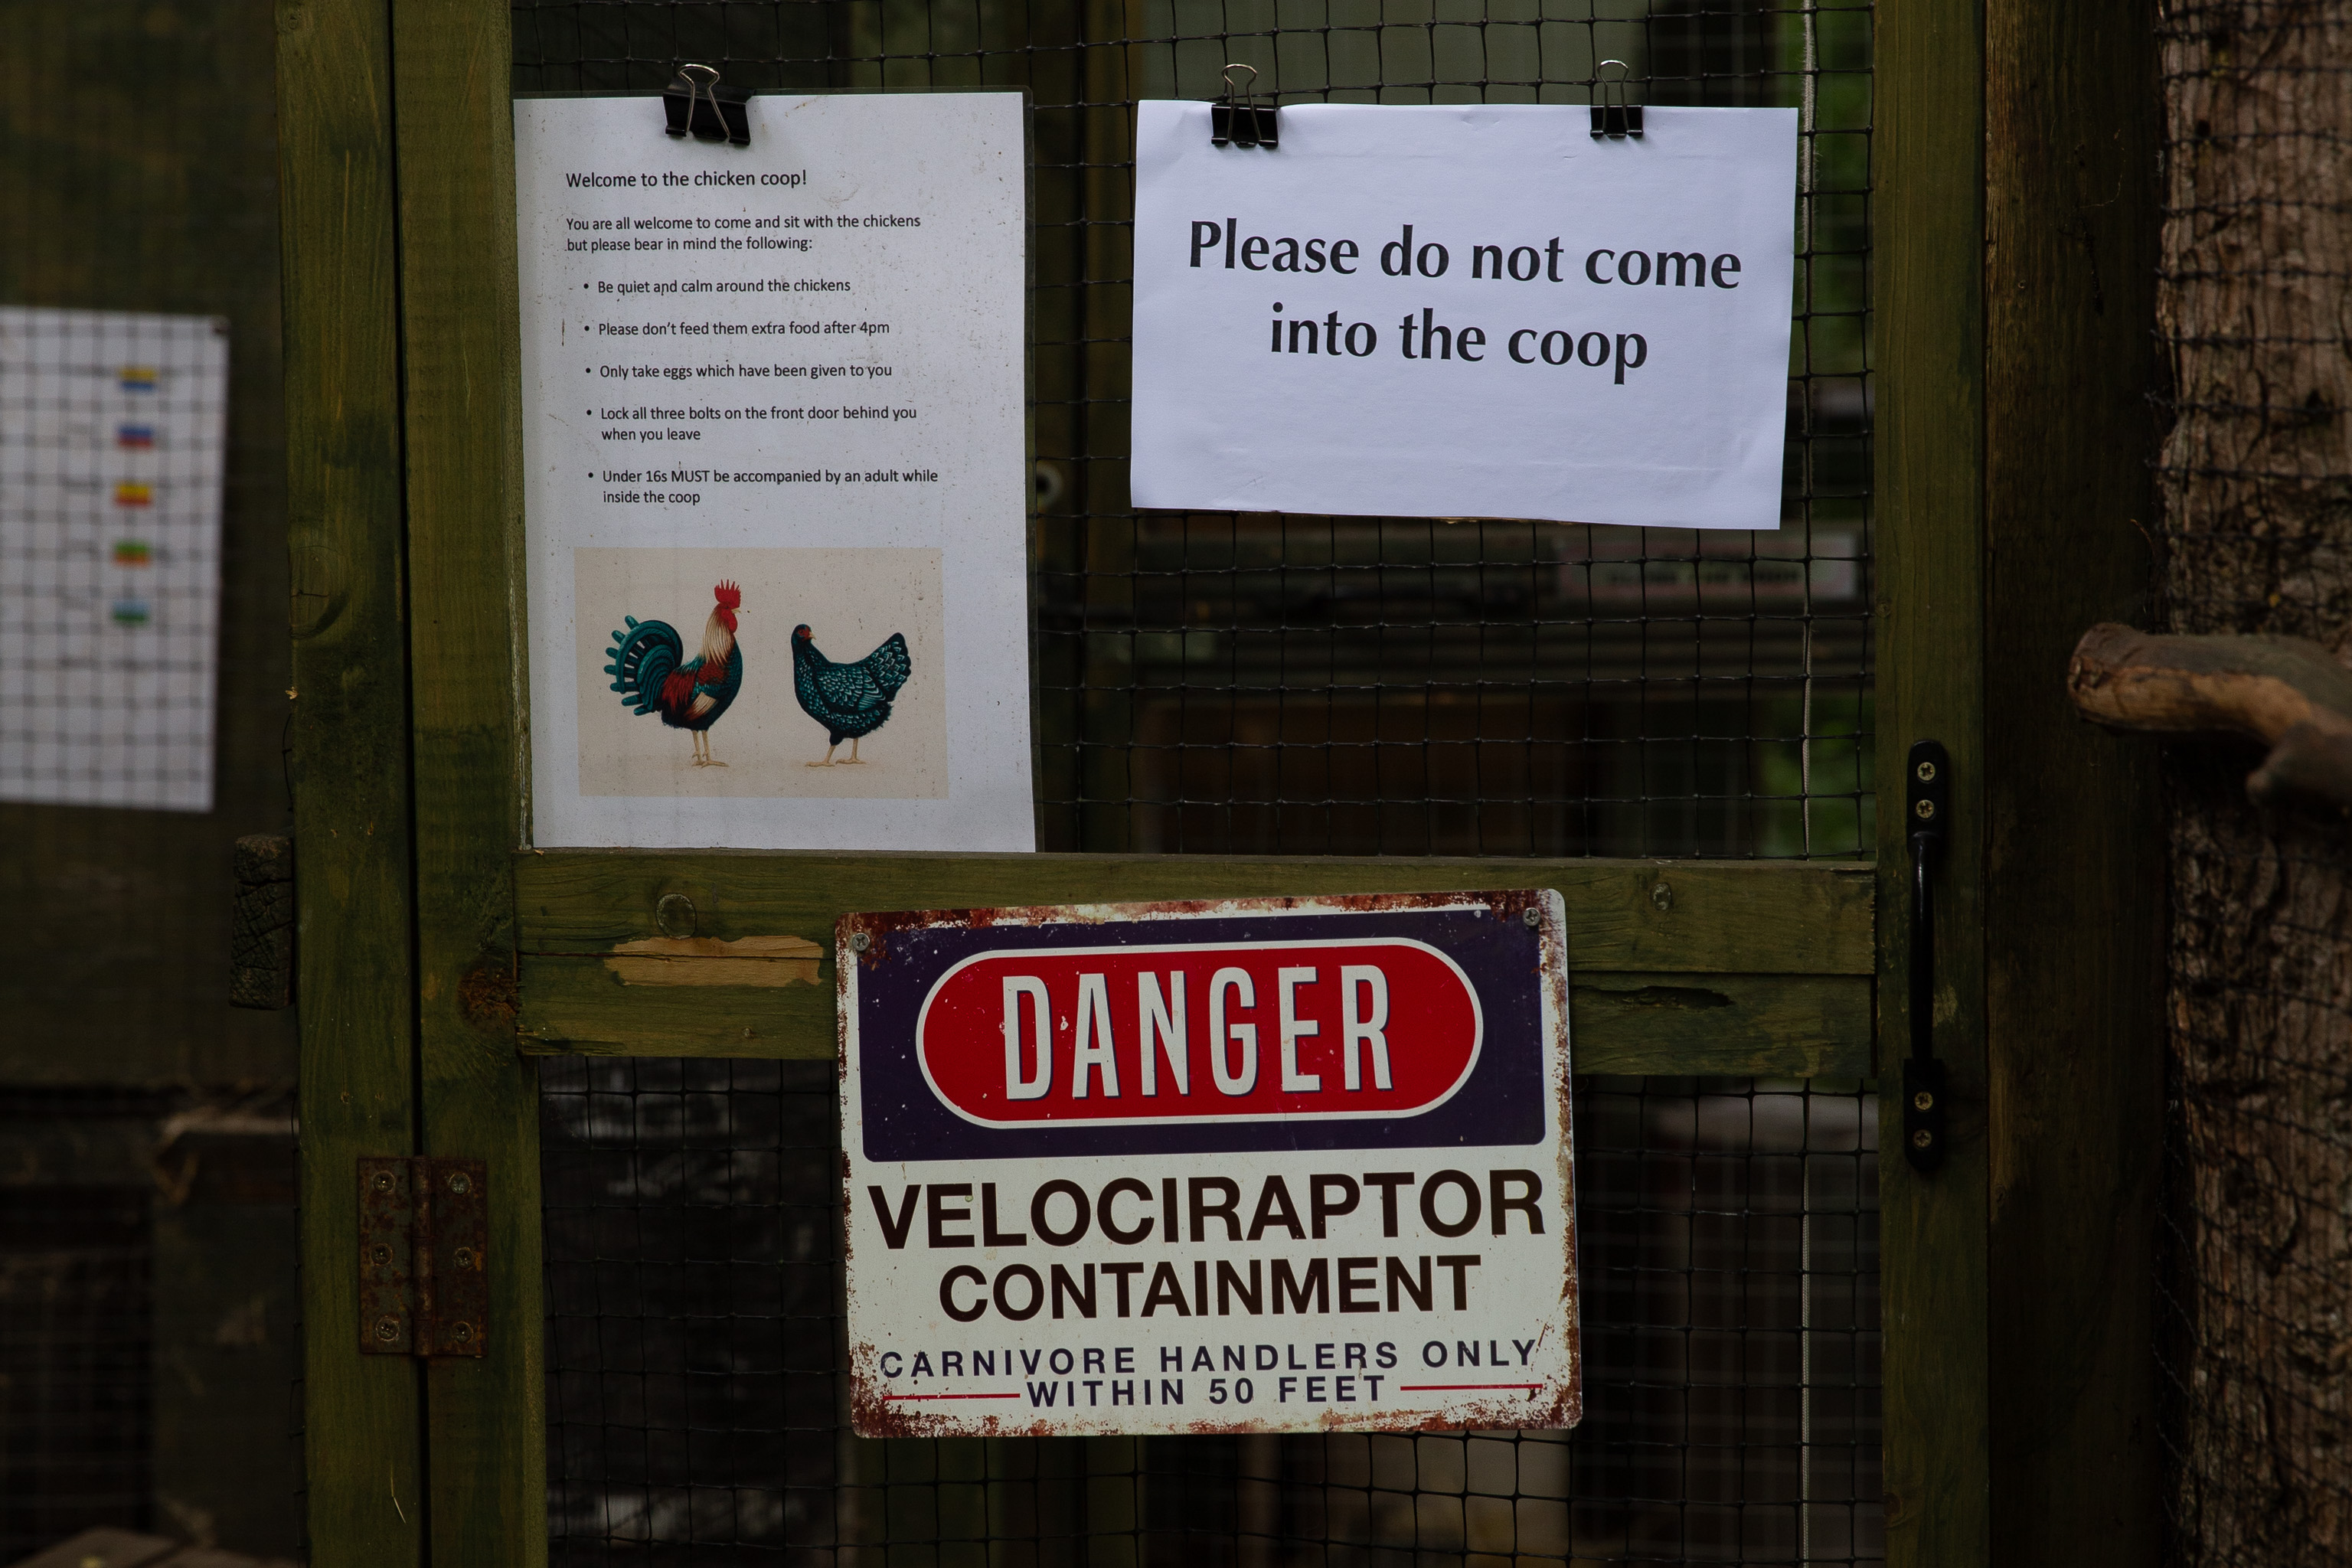 Velociraptor Containment
